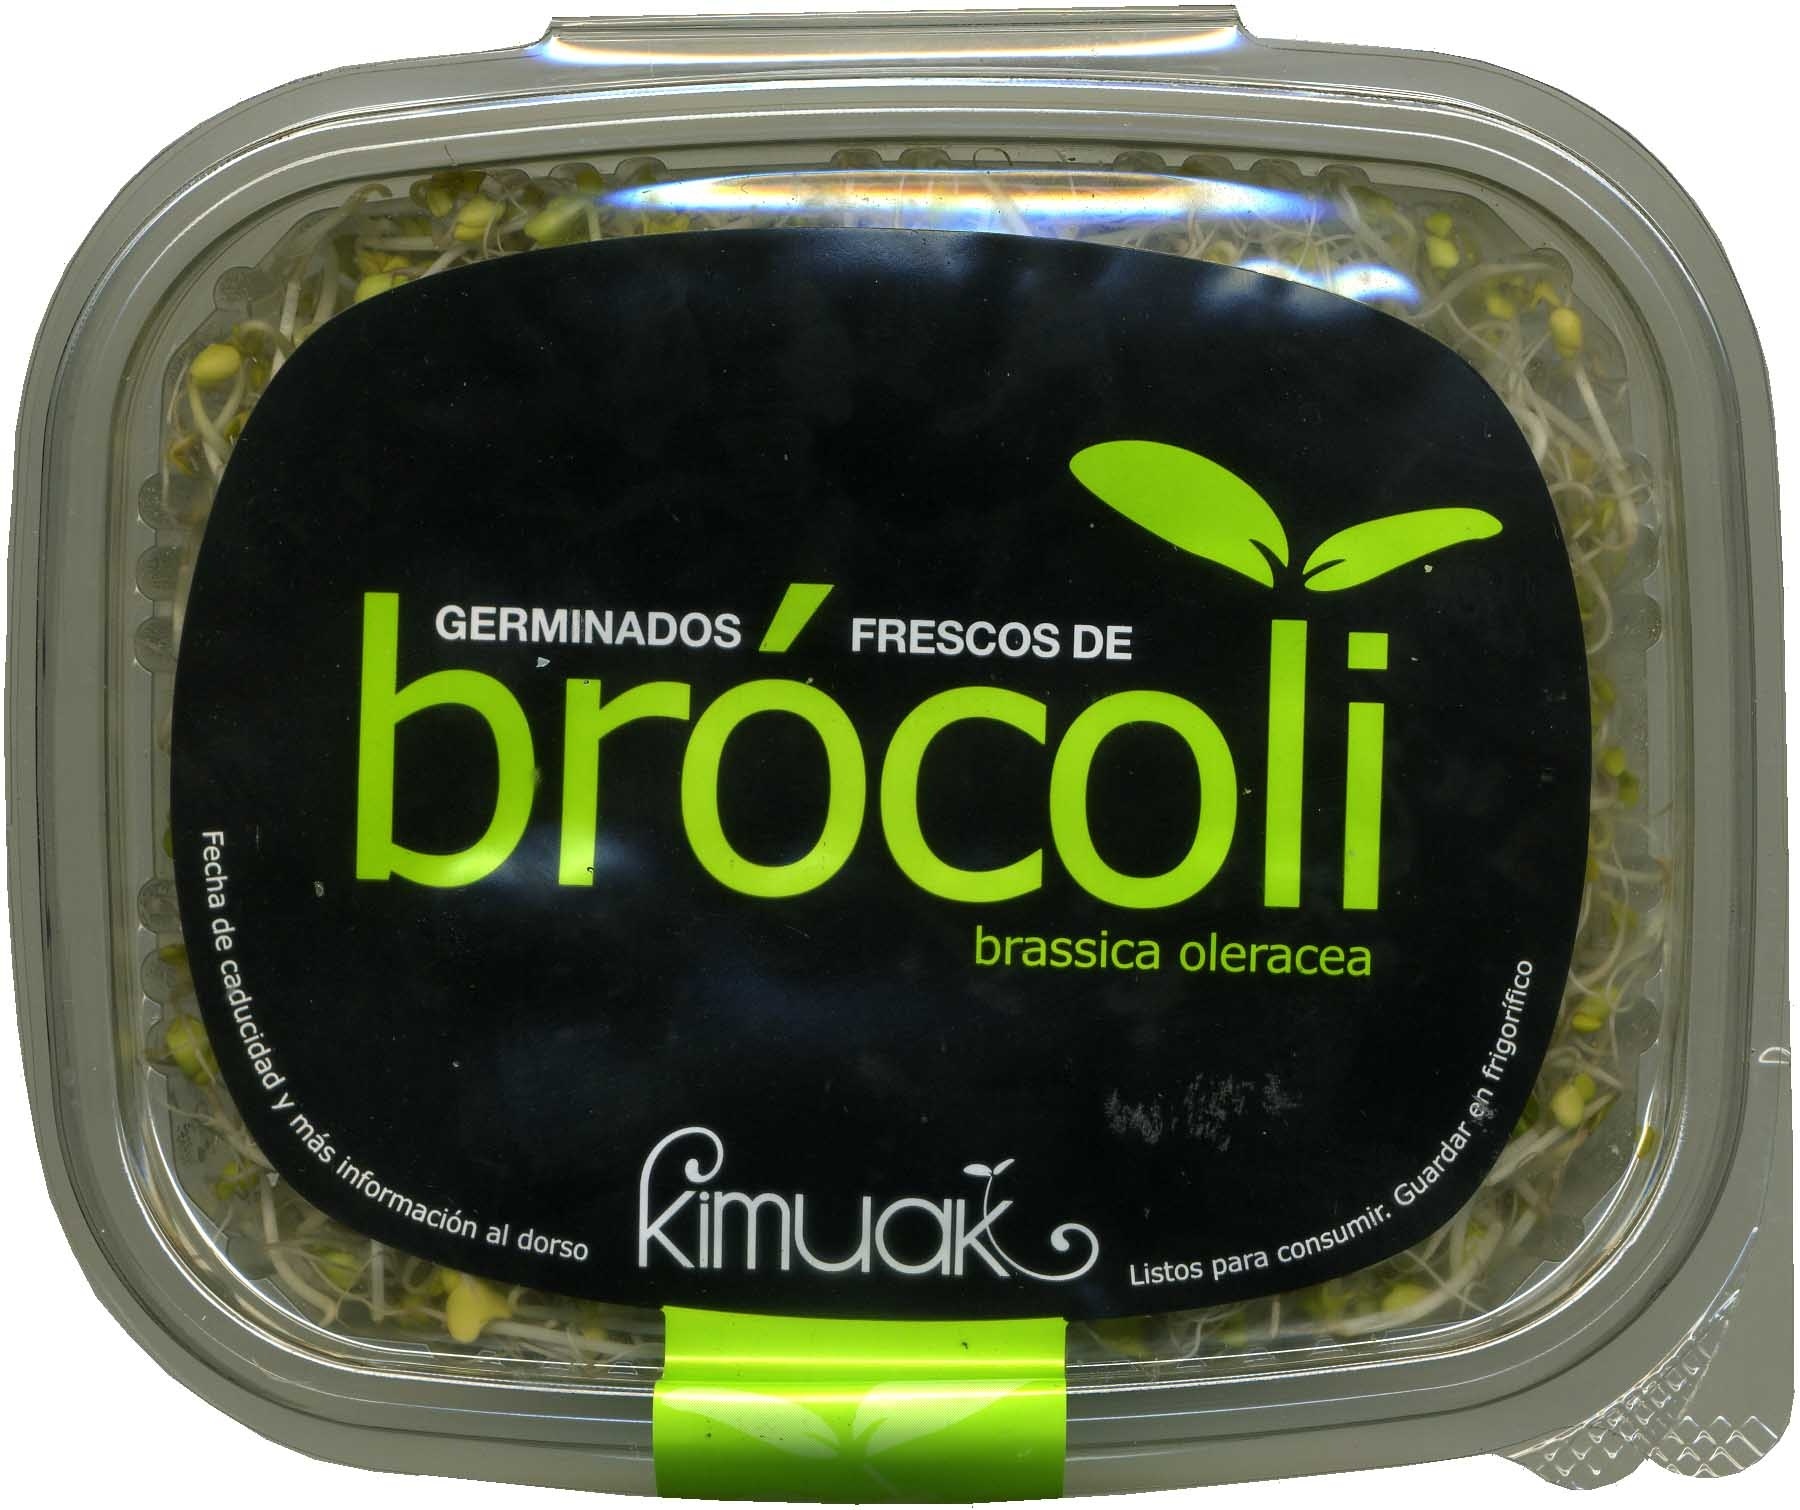 Germinados frescos de brócoli - Producte - es